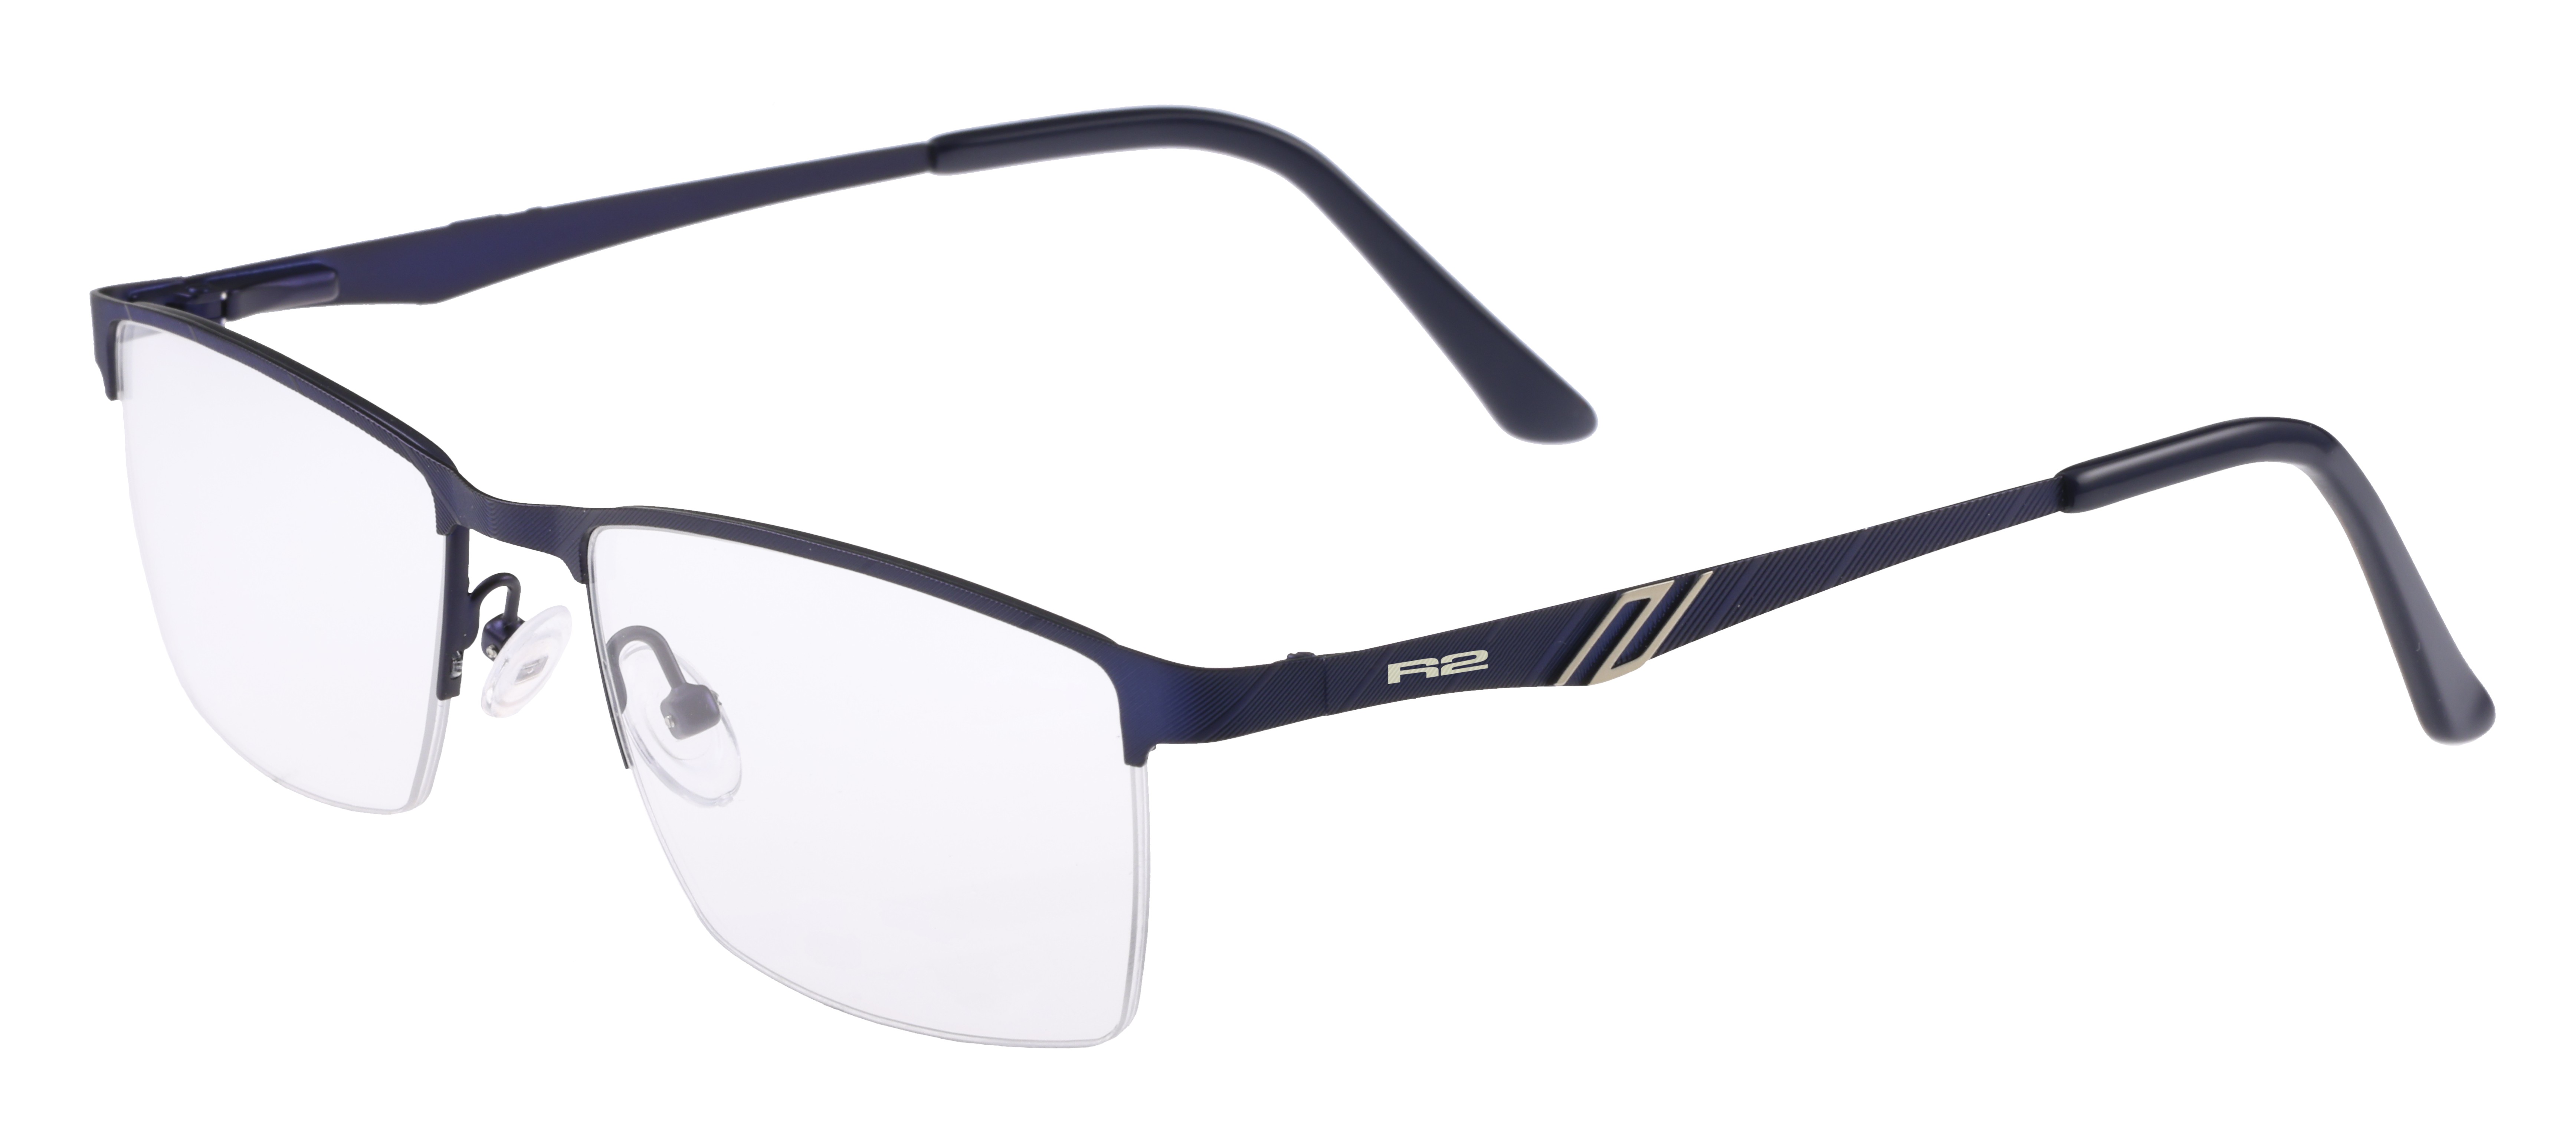 Sportovní dioptrické brýle R2  TALIC MAT113C1 - standard